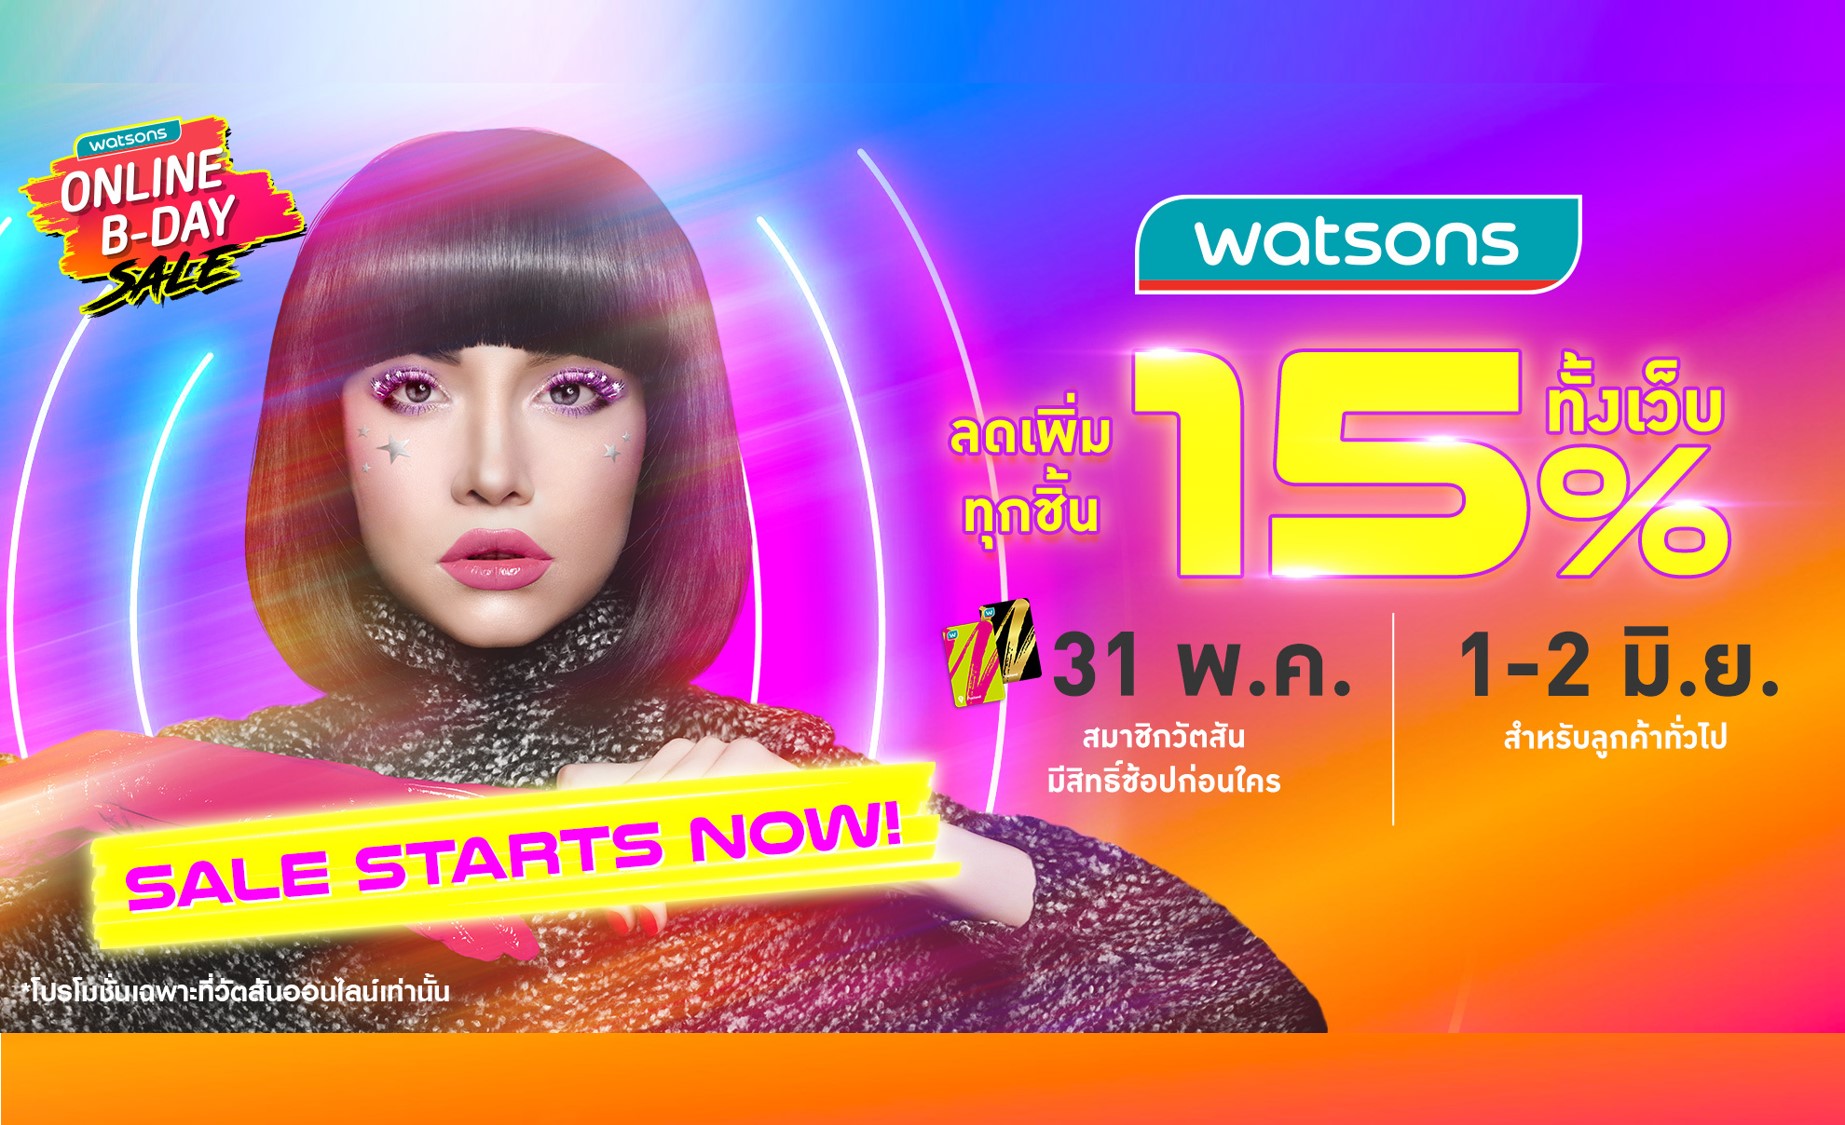 คุ้ม 2 ต่อ! วัตสัน ส่งโปร Watsons Online B-Day Sale ลดสูงสุด 70%  พร้อม On Top เพิ่ม 15% ทั้งเว็บ และแอปฯ 31 พ.ค. 64 – 2 มิ.ย. 64 นี้เท่านั้น